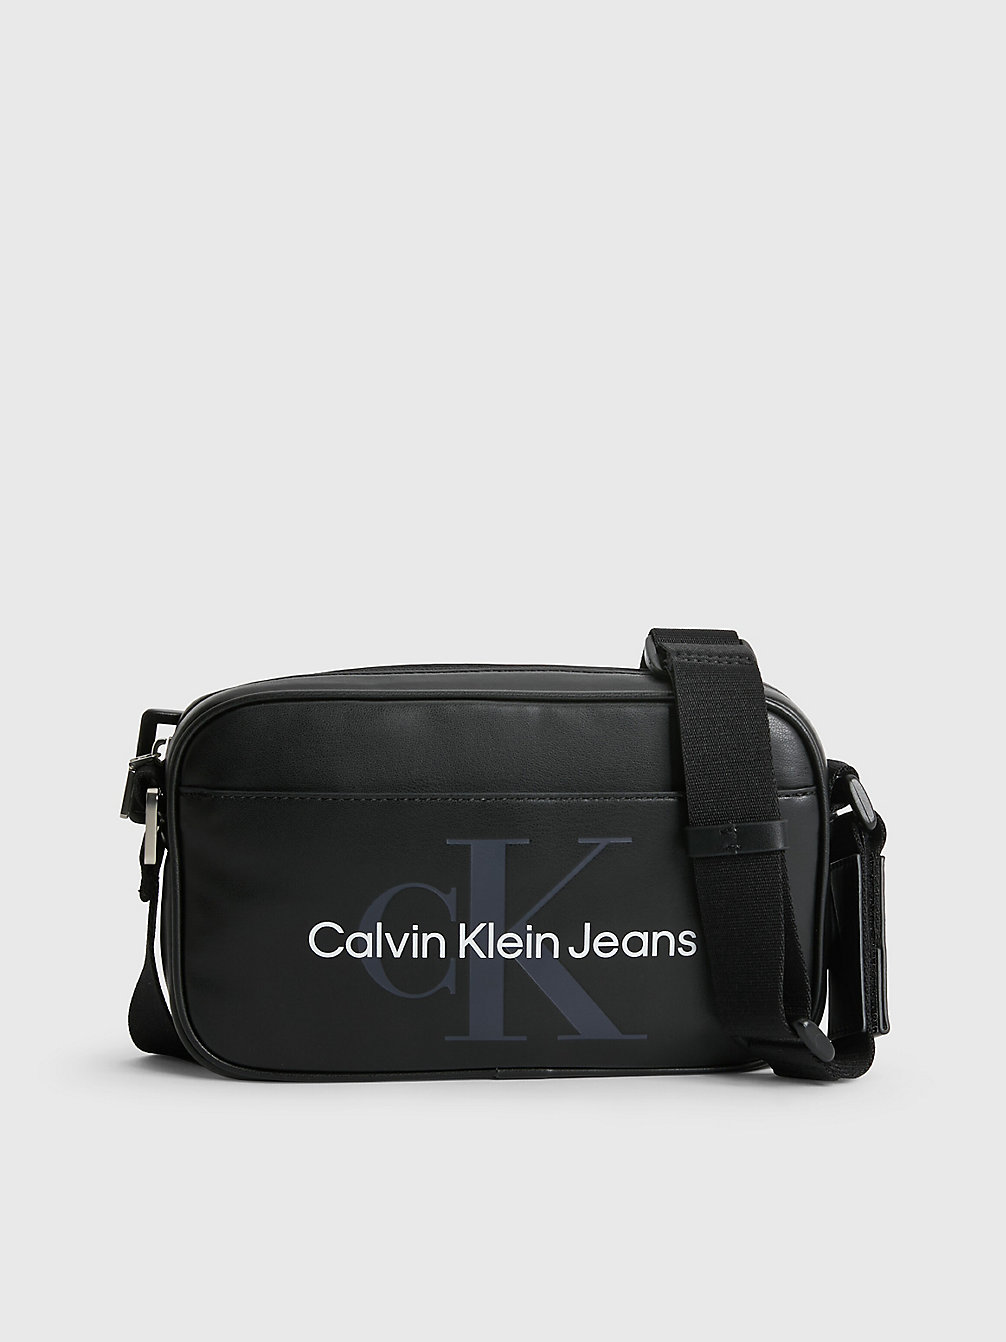 BLACK Sac En Bandoulière Convertible undefined hommes Calvin Klein